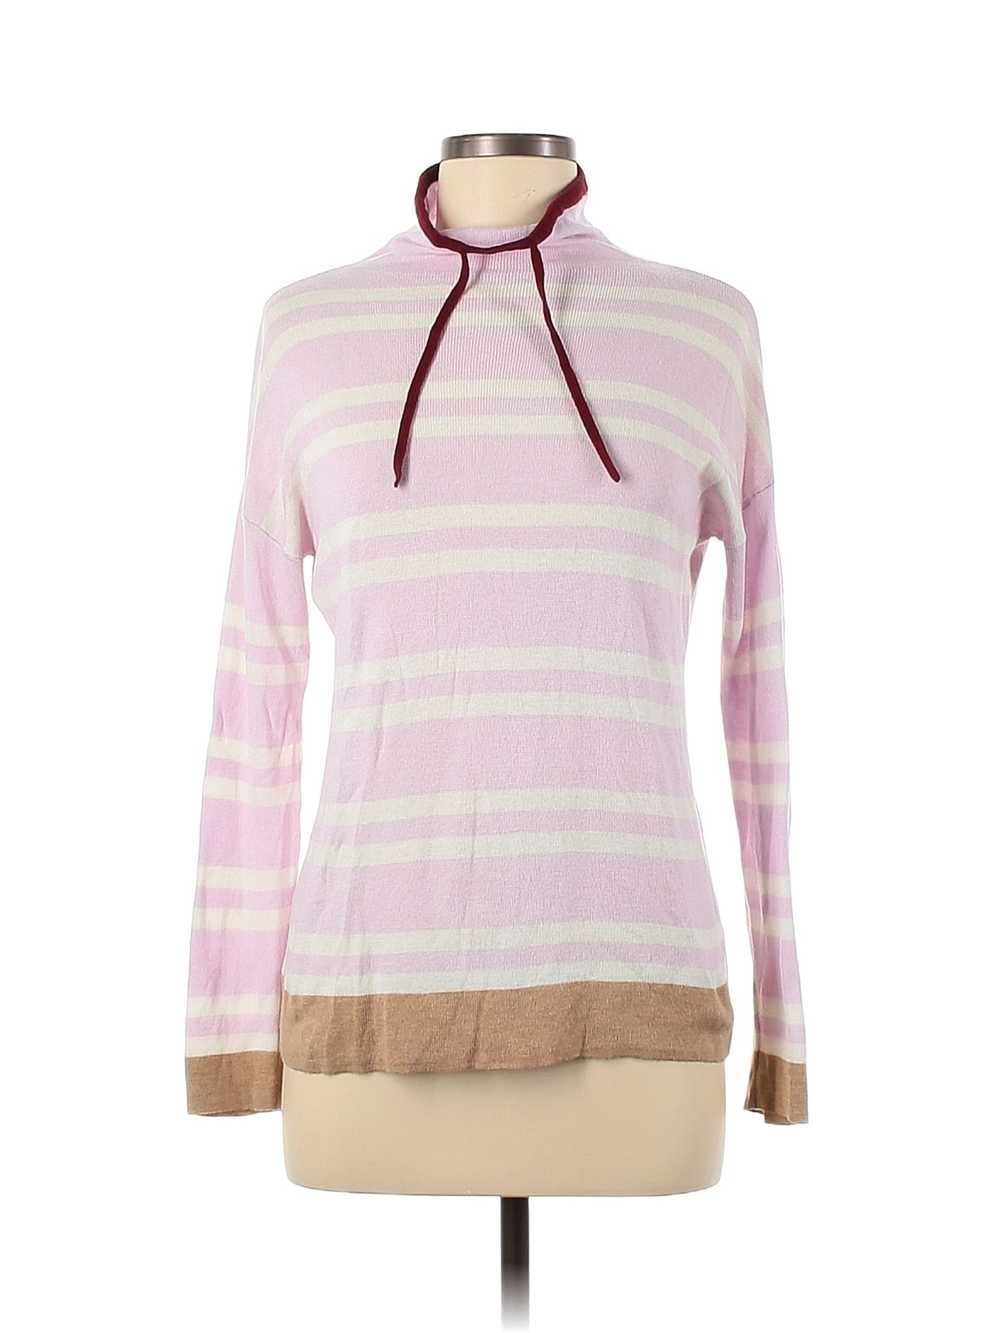 Lou & Grey Women Pink Turtleneck Sweater XS - image 1